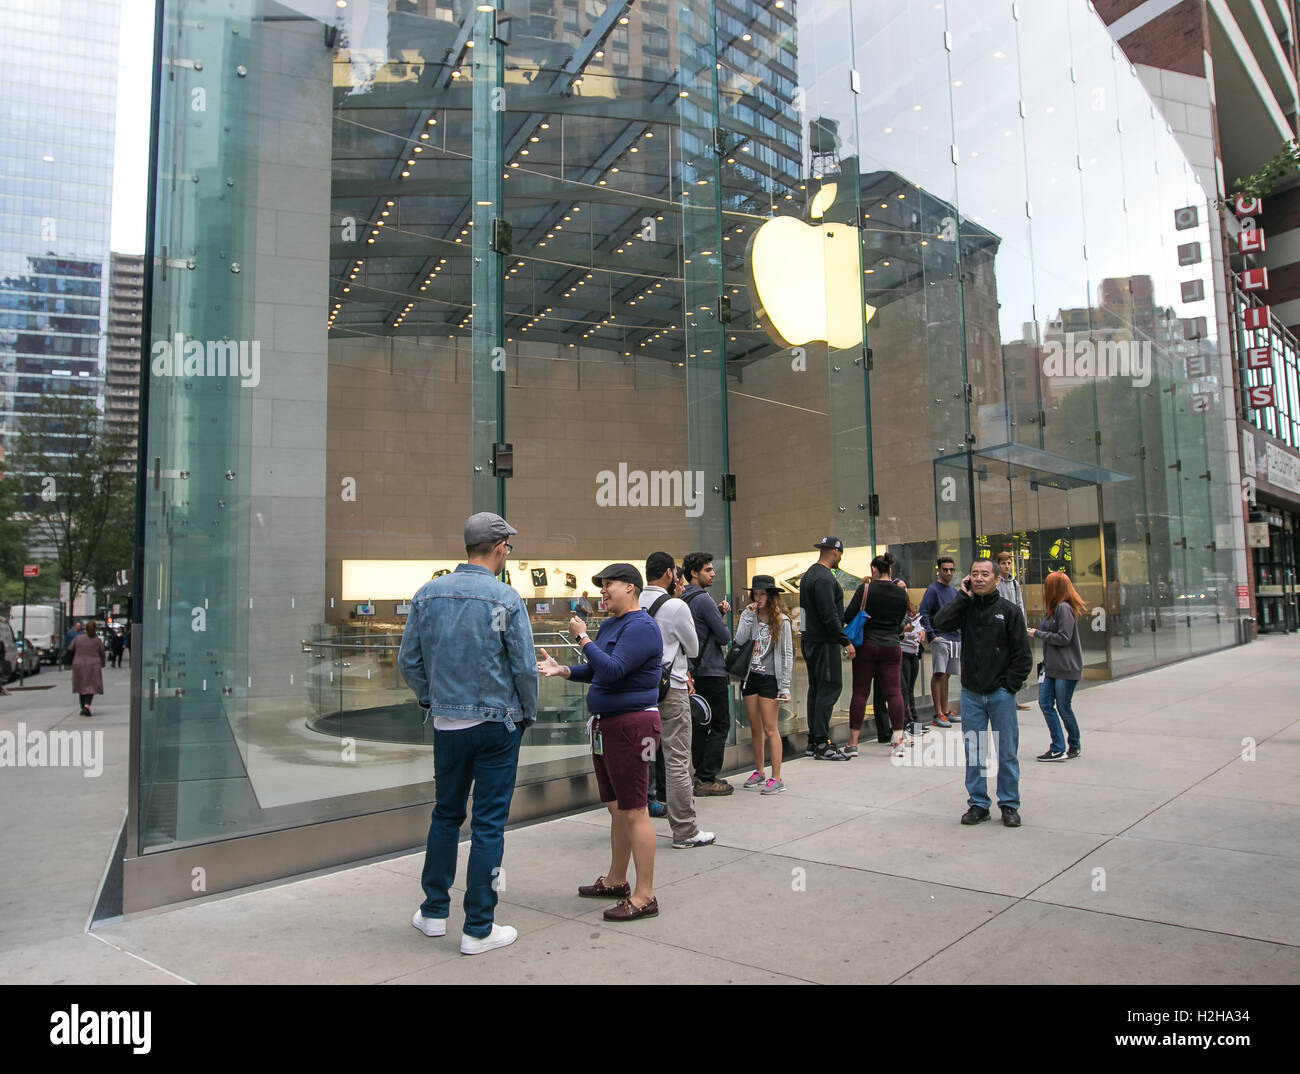 Les gens font la queue devant un Apple Store en prévision de son ouverture. Banque D'Images